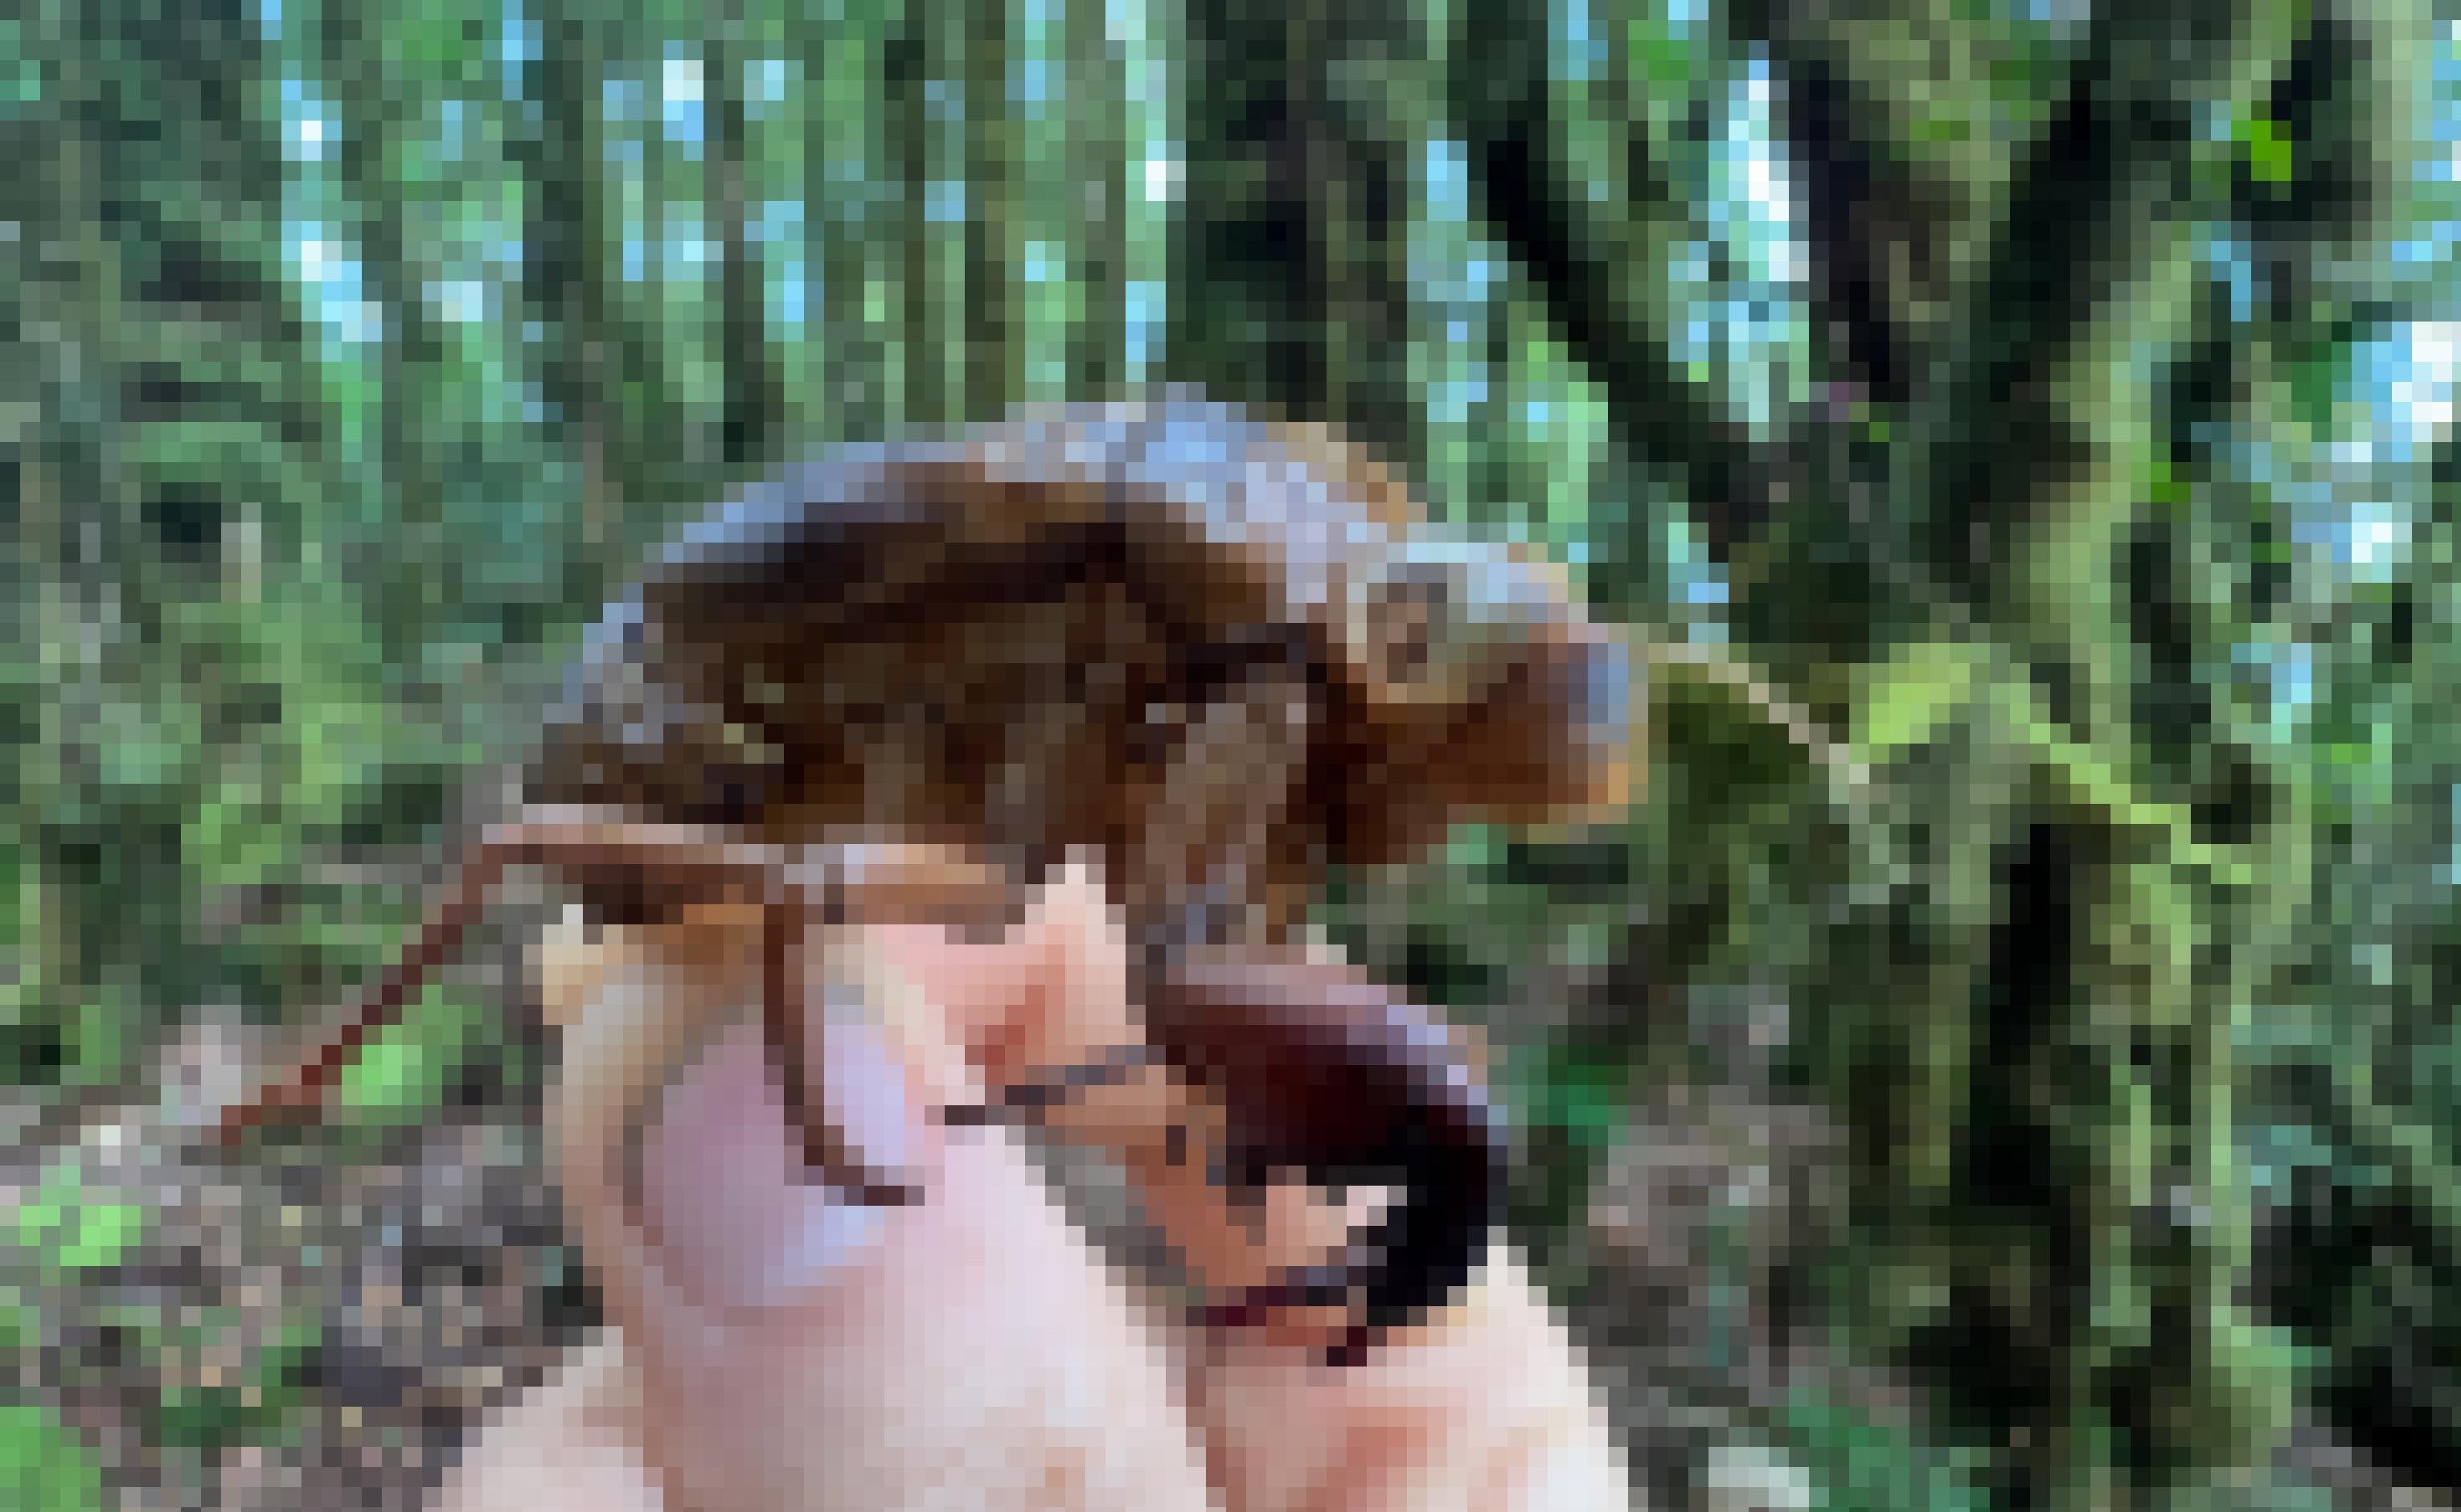 Jemand hält die bernsteinfarbene Chitinhülle eines Insekts zwischen Daumen und Zeigefinger. Sie ist etwa mausgroß mit zwei kräftigen Vorderbeinen, die an die Fangarme von Gottesanbeterinnen erinnern.